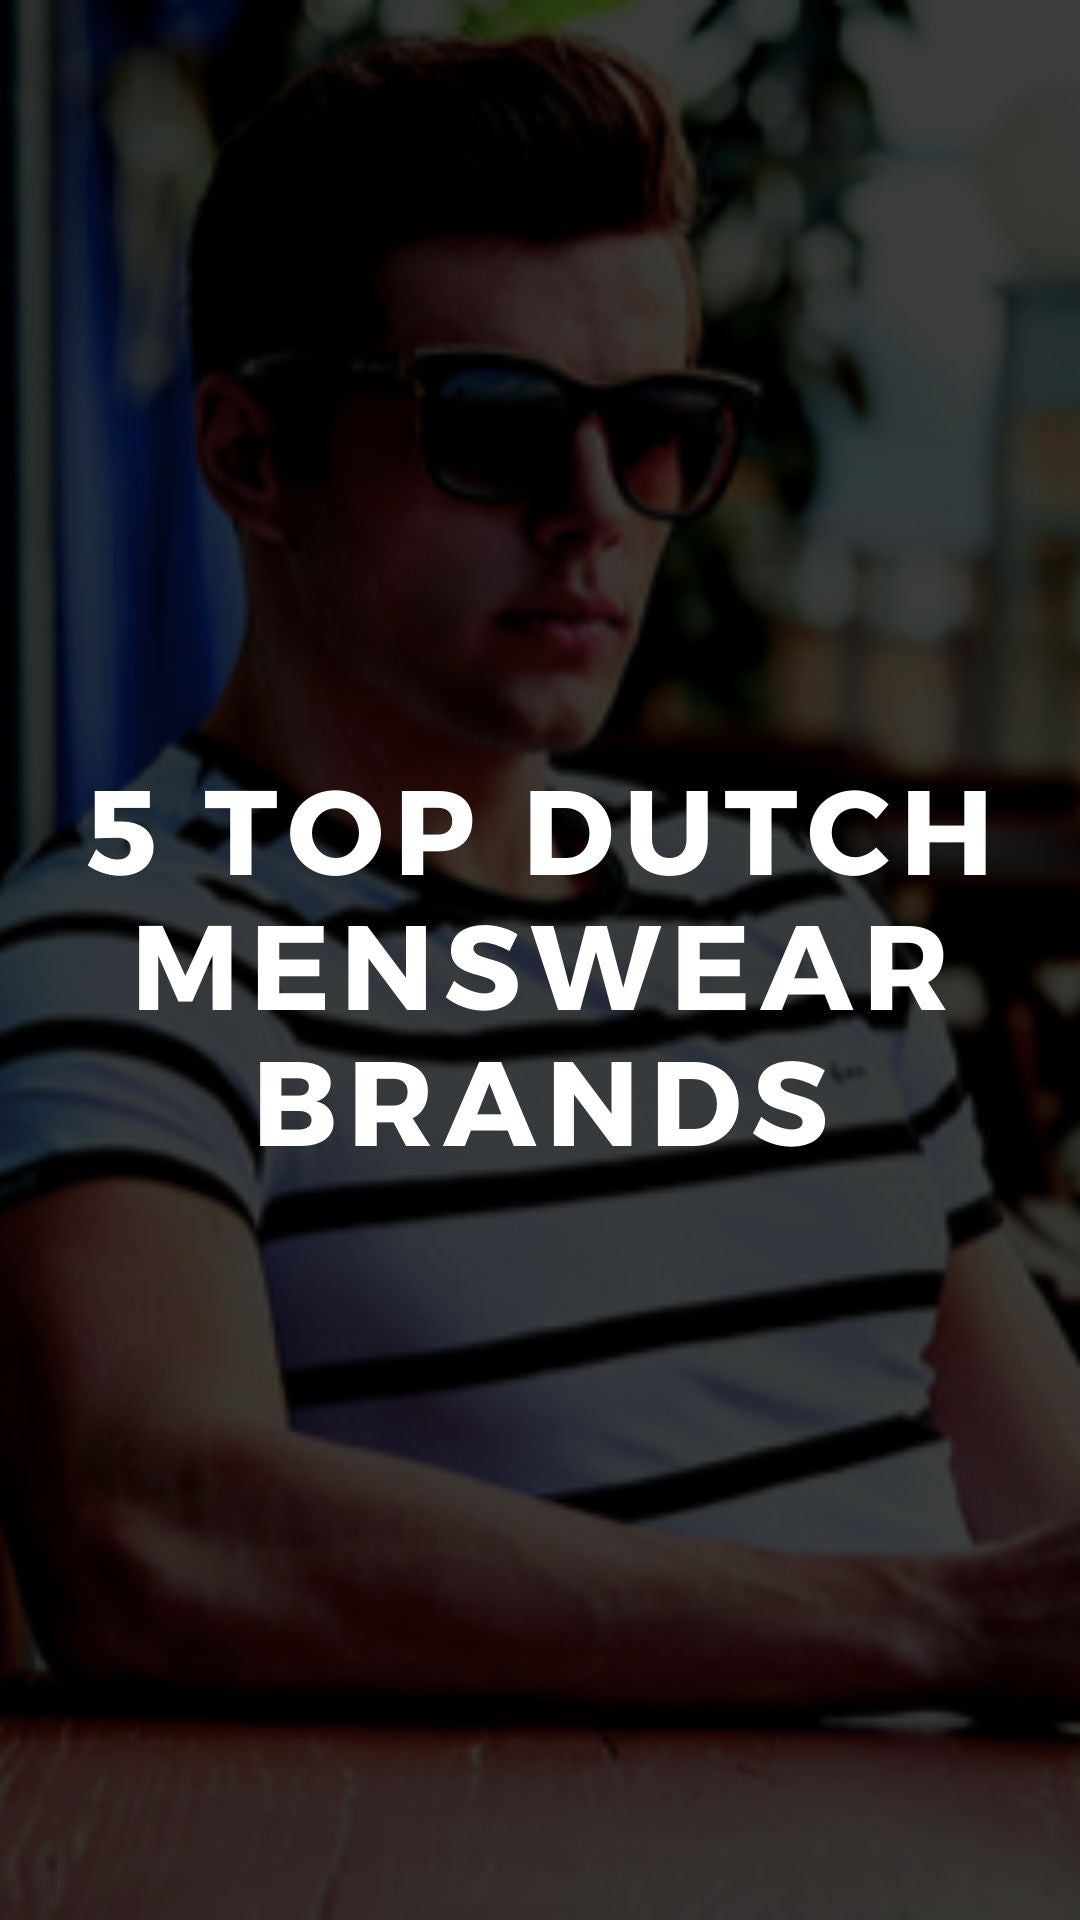 5 Top Dutch Menswear Brands